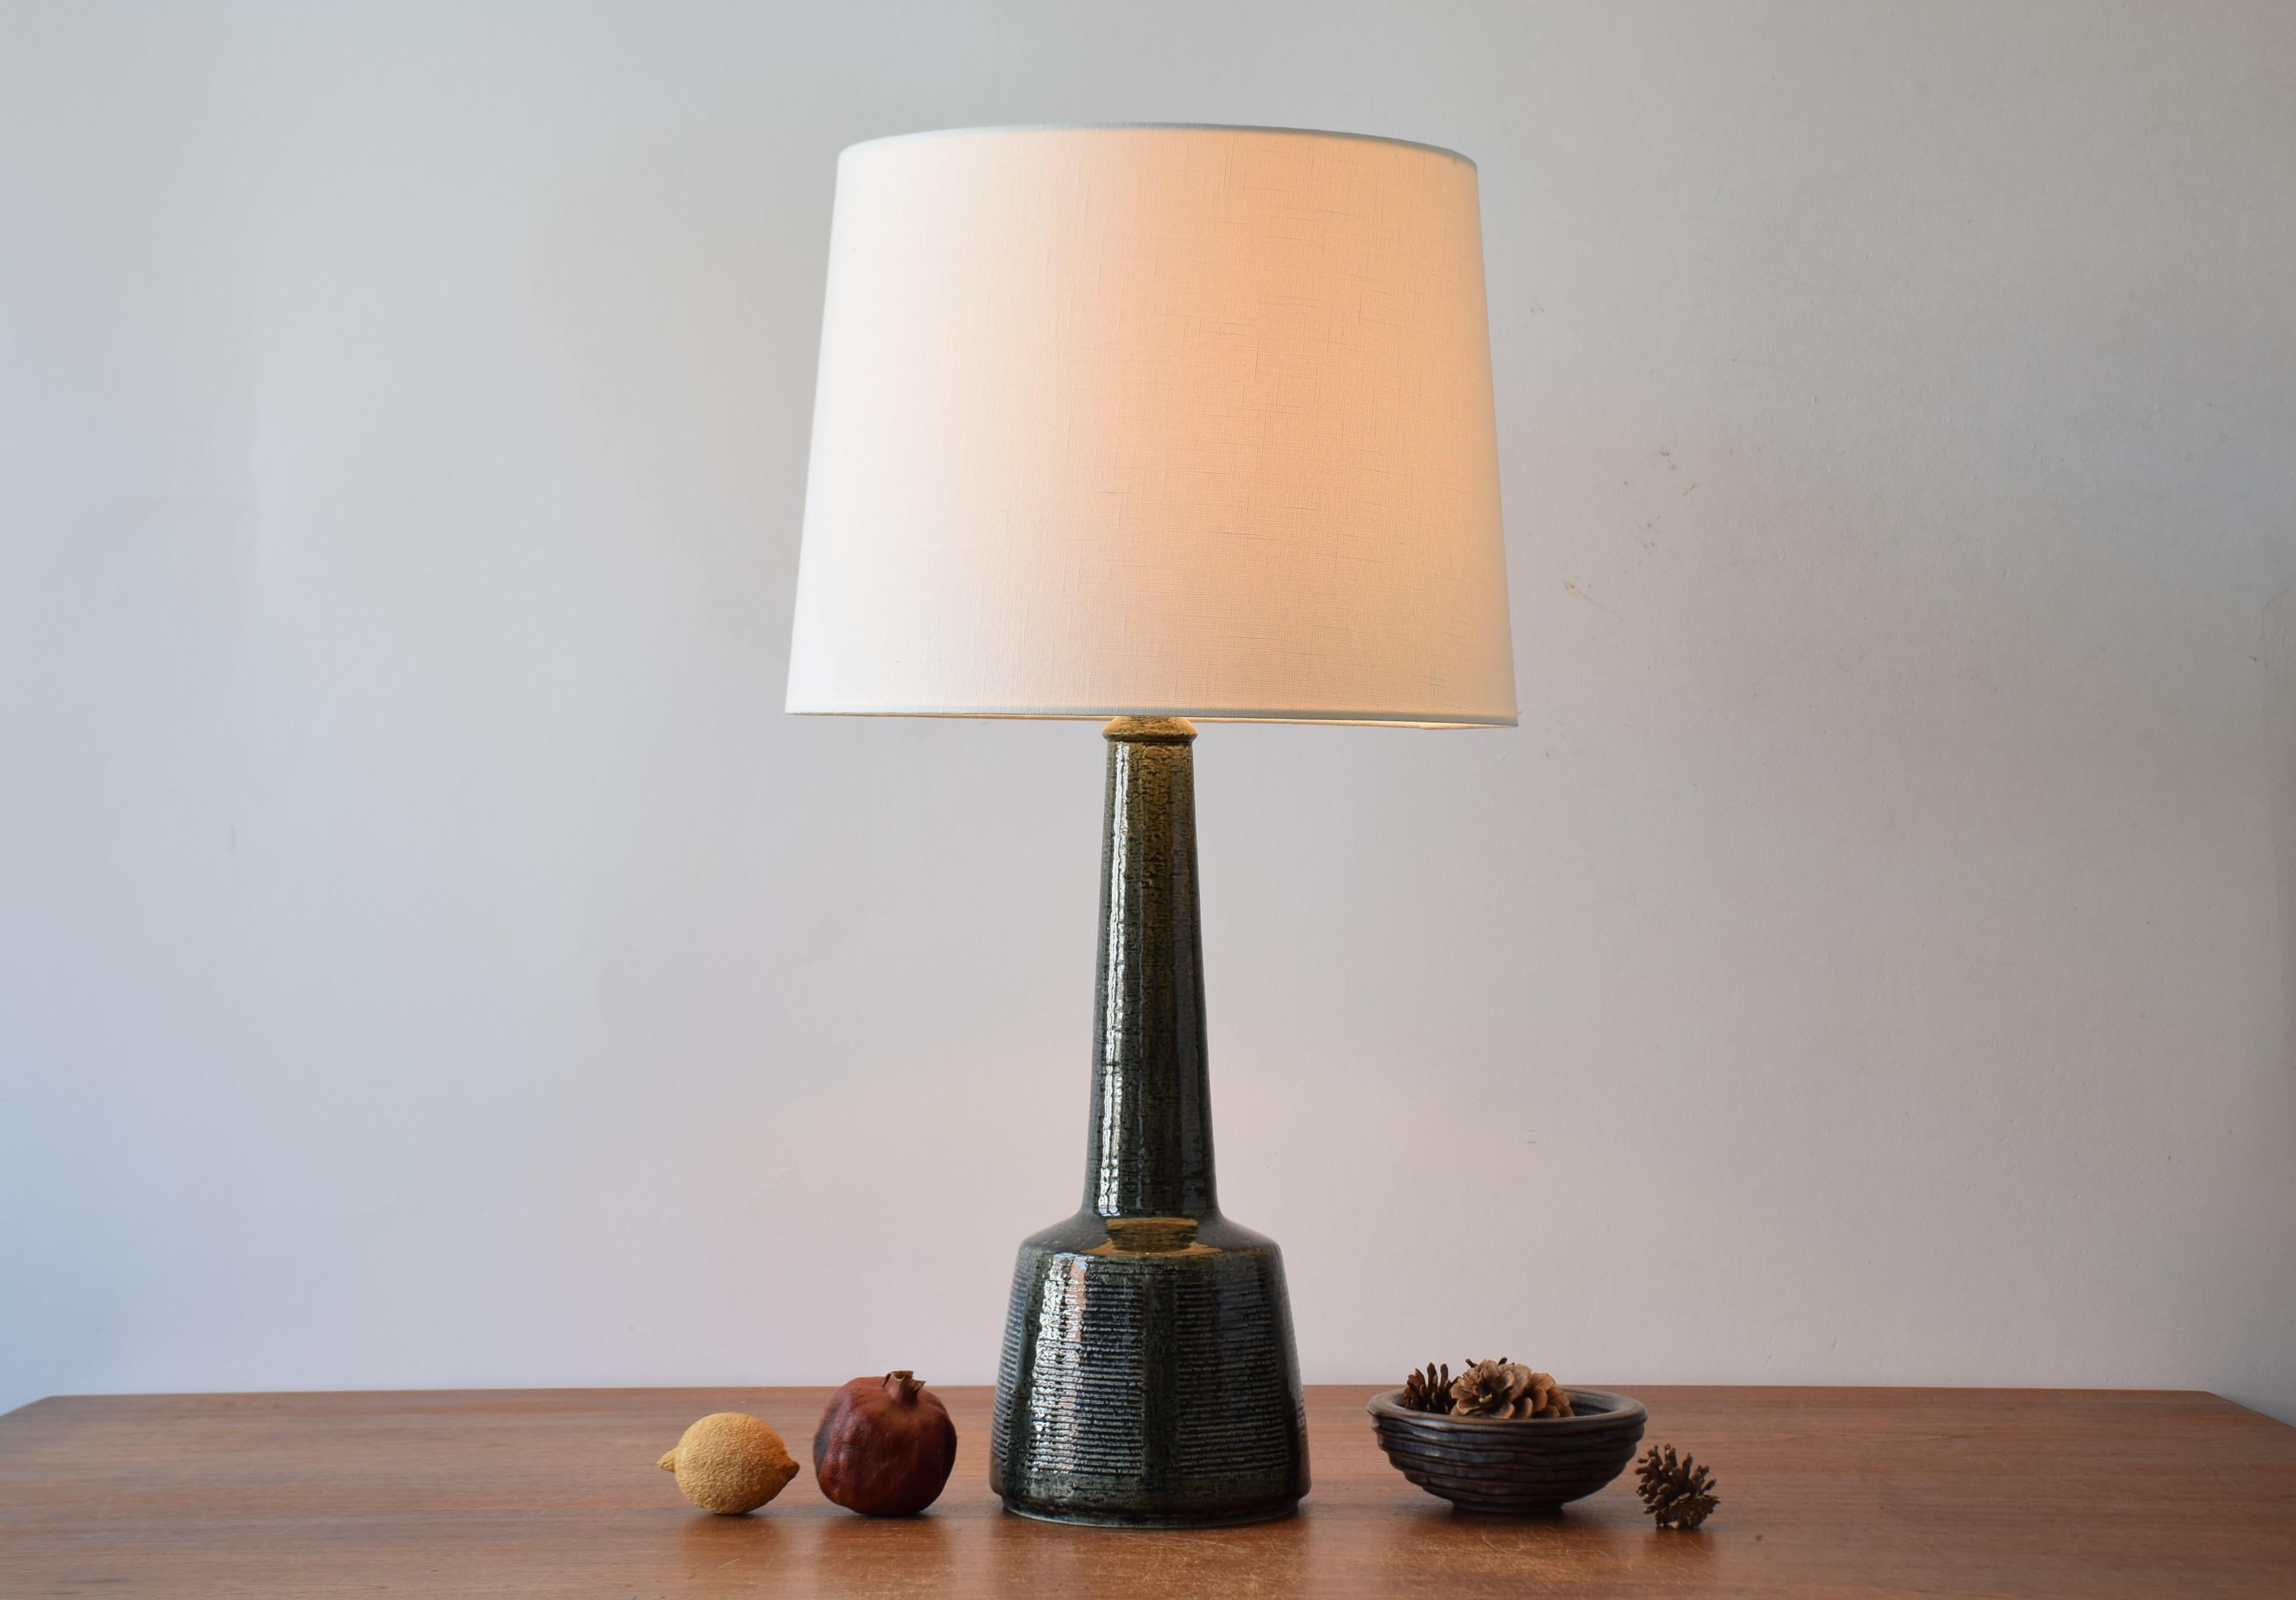 Lampe de table haute en céramique vintage Palshus Denmark avec abat-jour neuf.

La lampe a été fabriquée en collaboration avec le fabricant de lampes danois Le Klint et conçue par Esben Klint. Il a été fabriqué vers les années 1960. La lampe a une